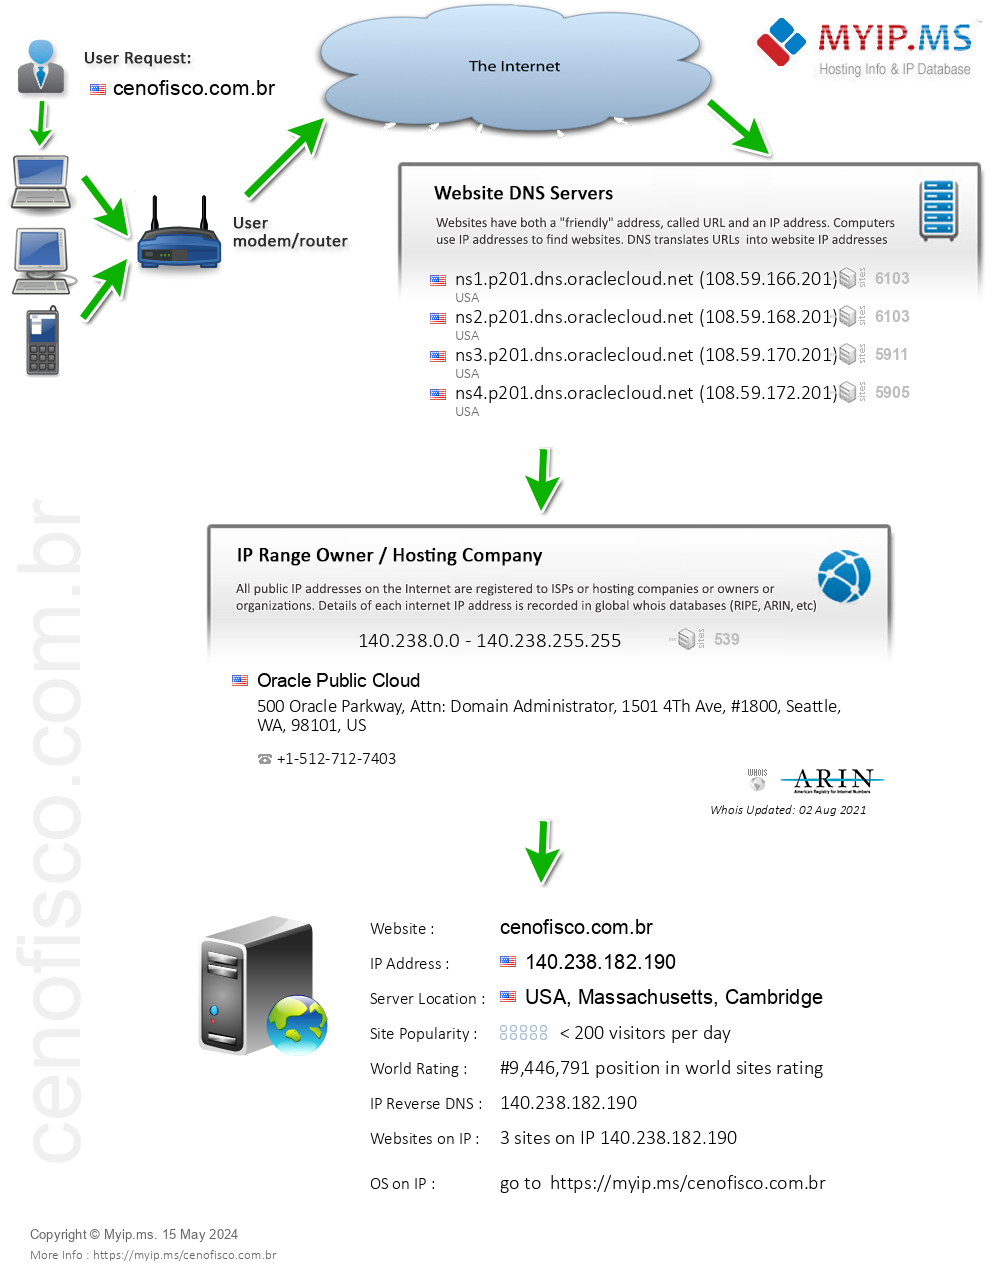 Cenofisco.com.br - Website Hosting Visual IP Diagram